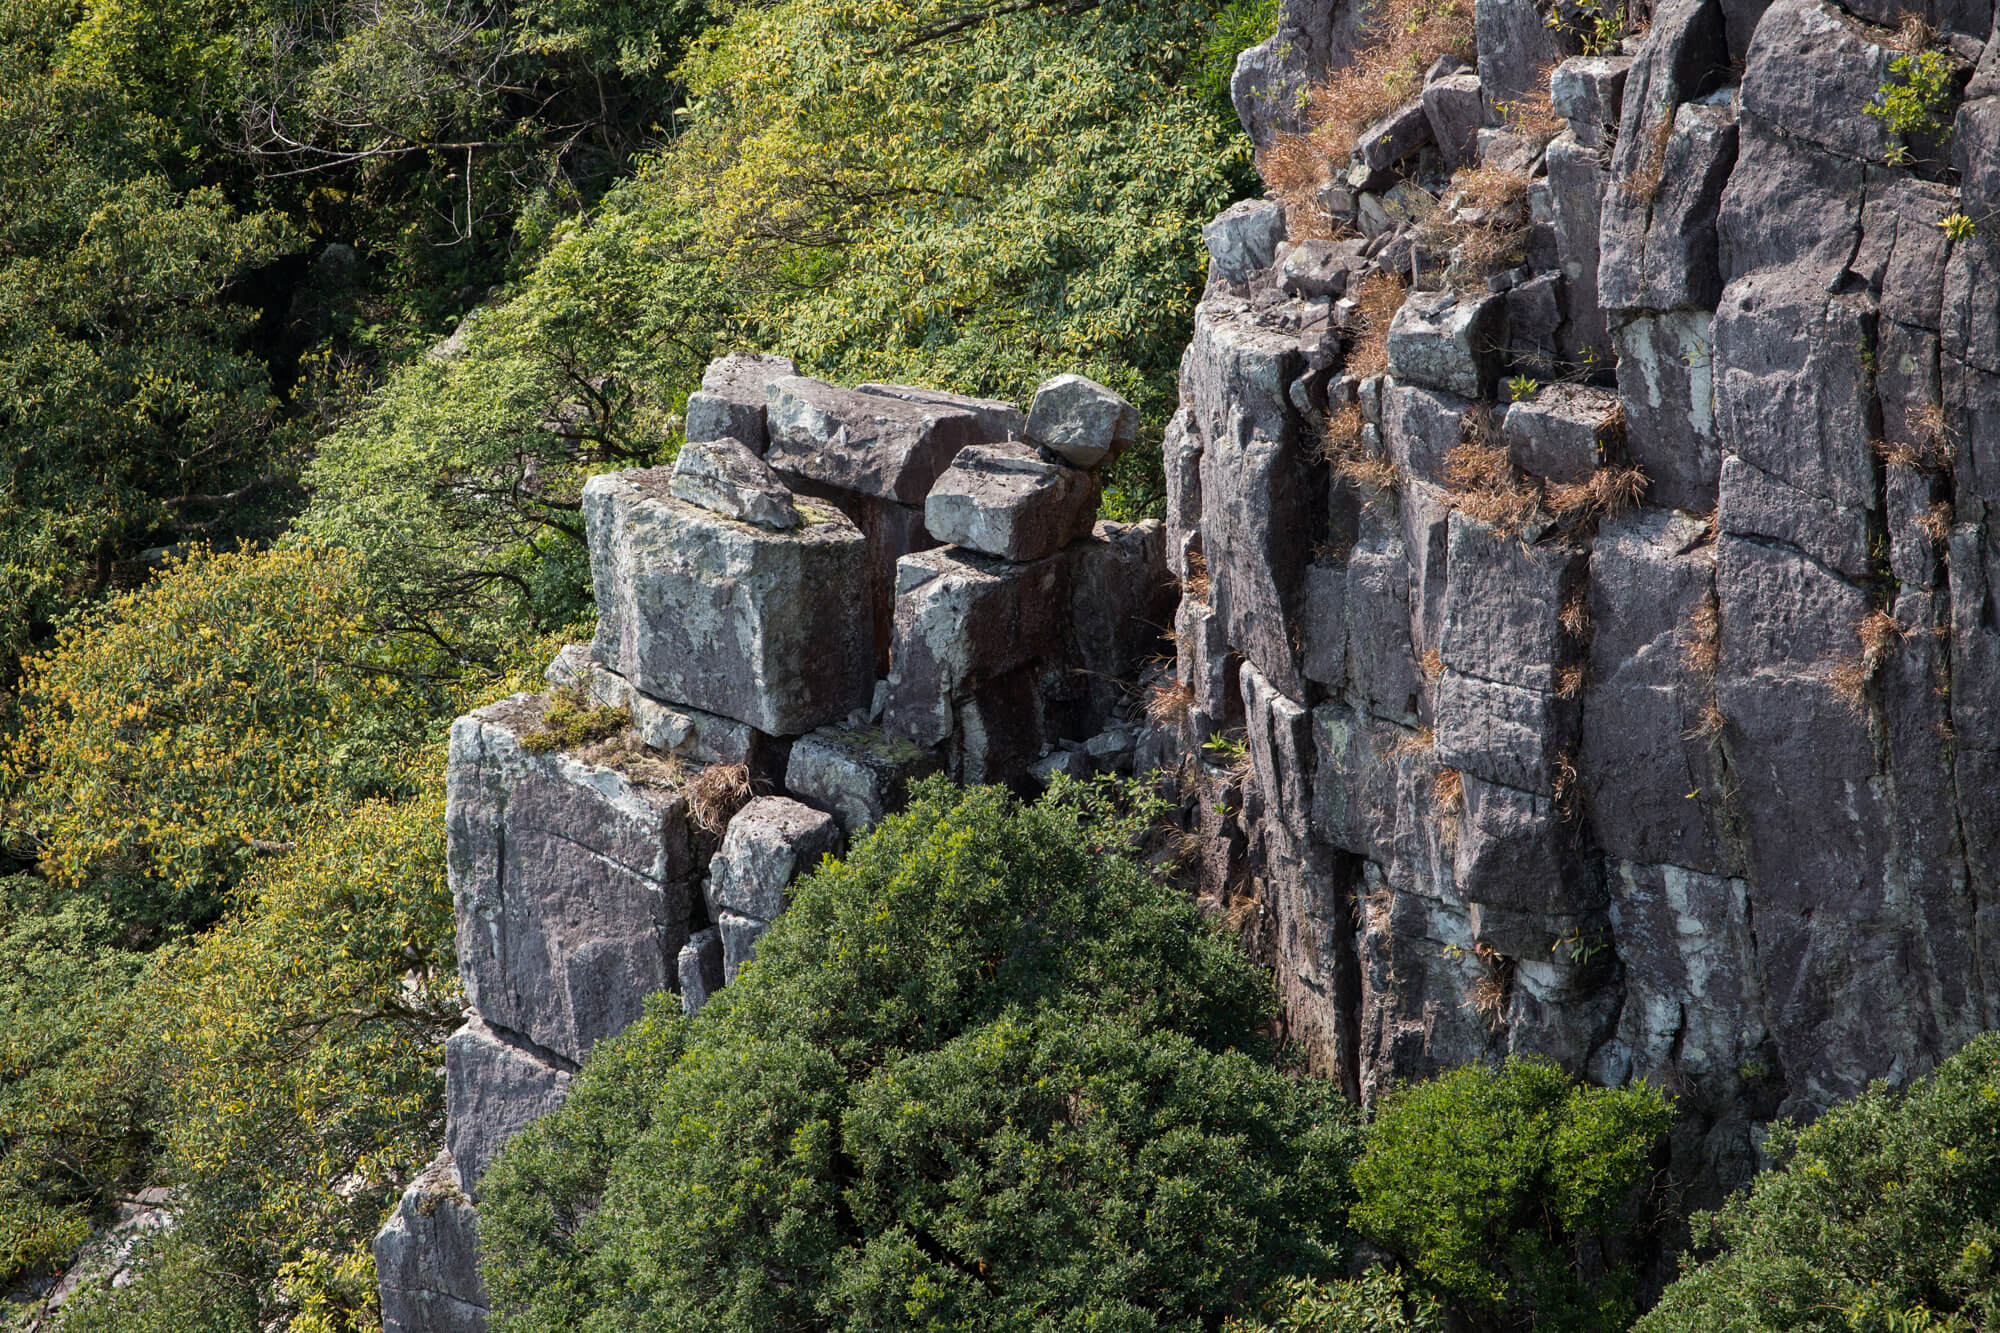 「積木崖」僅指圖中左方的石塔